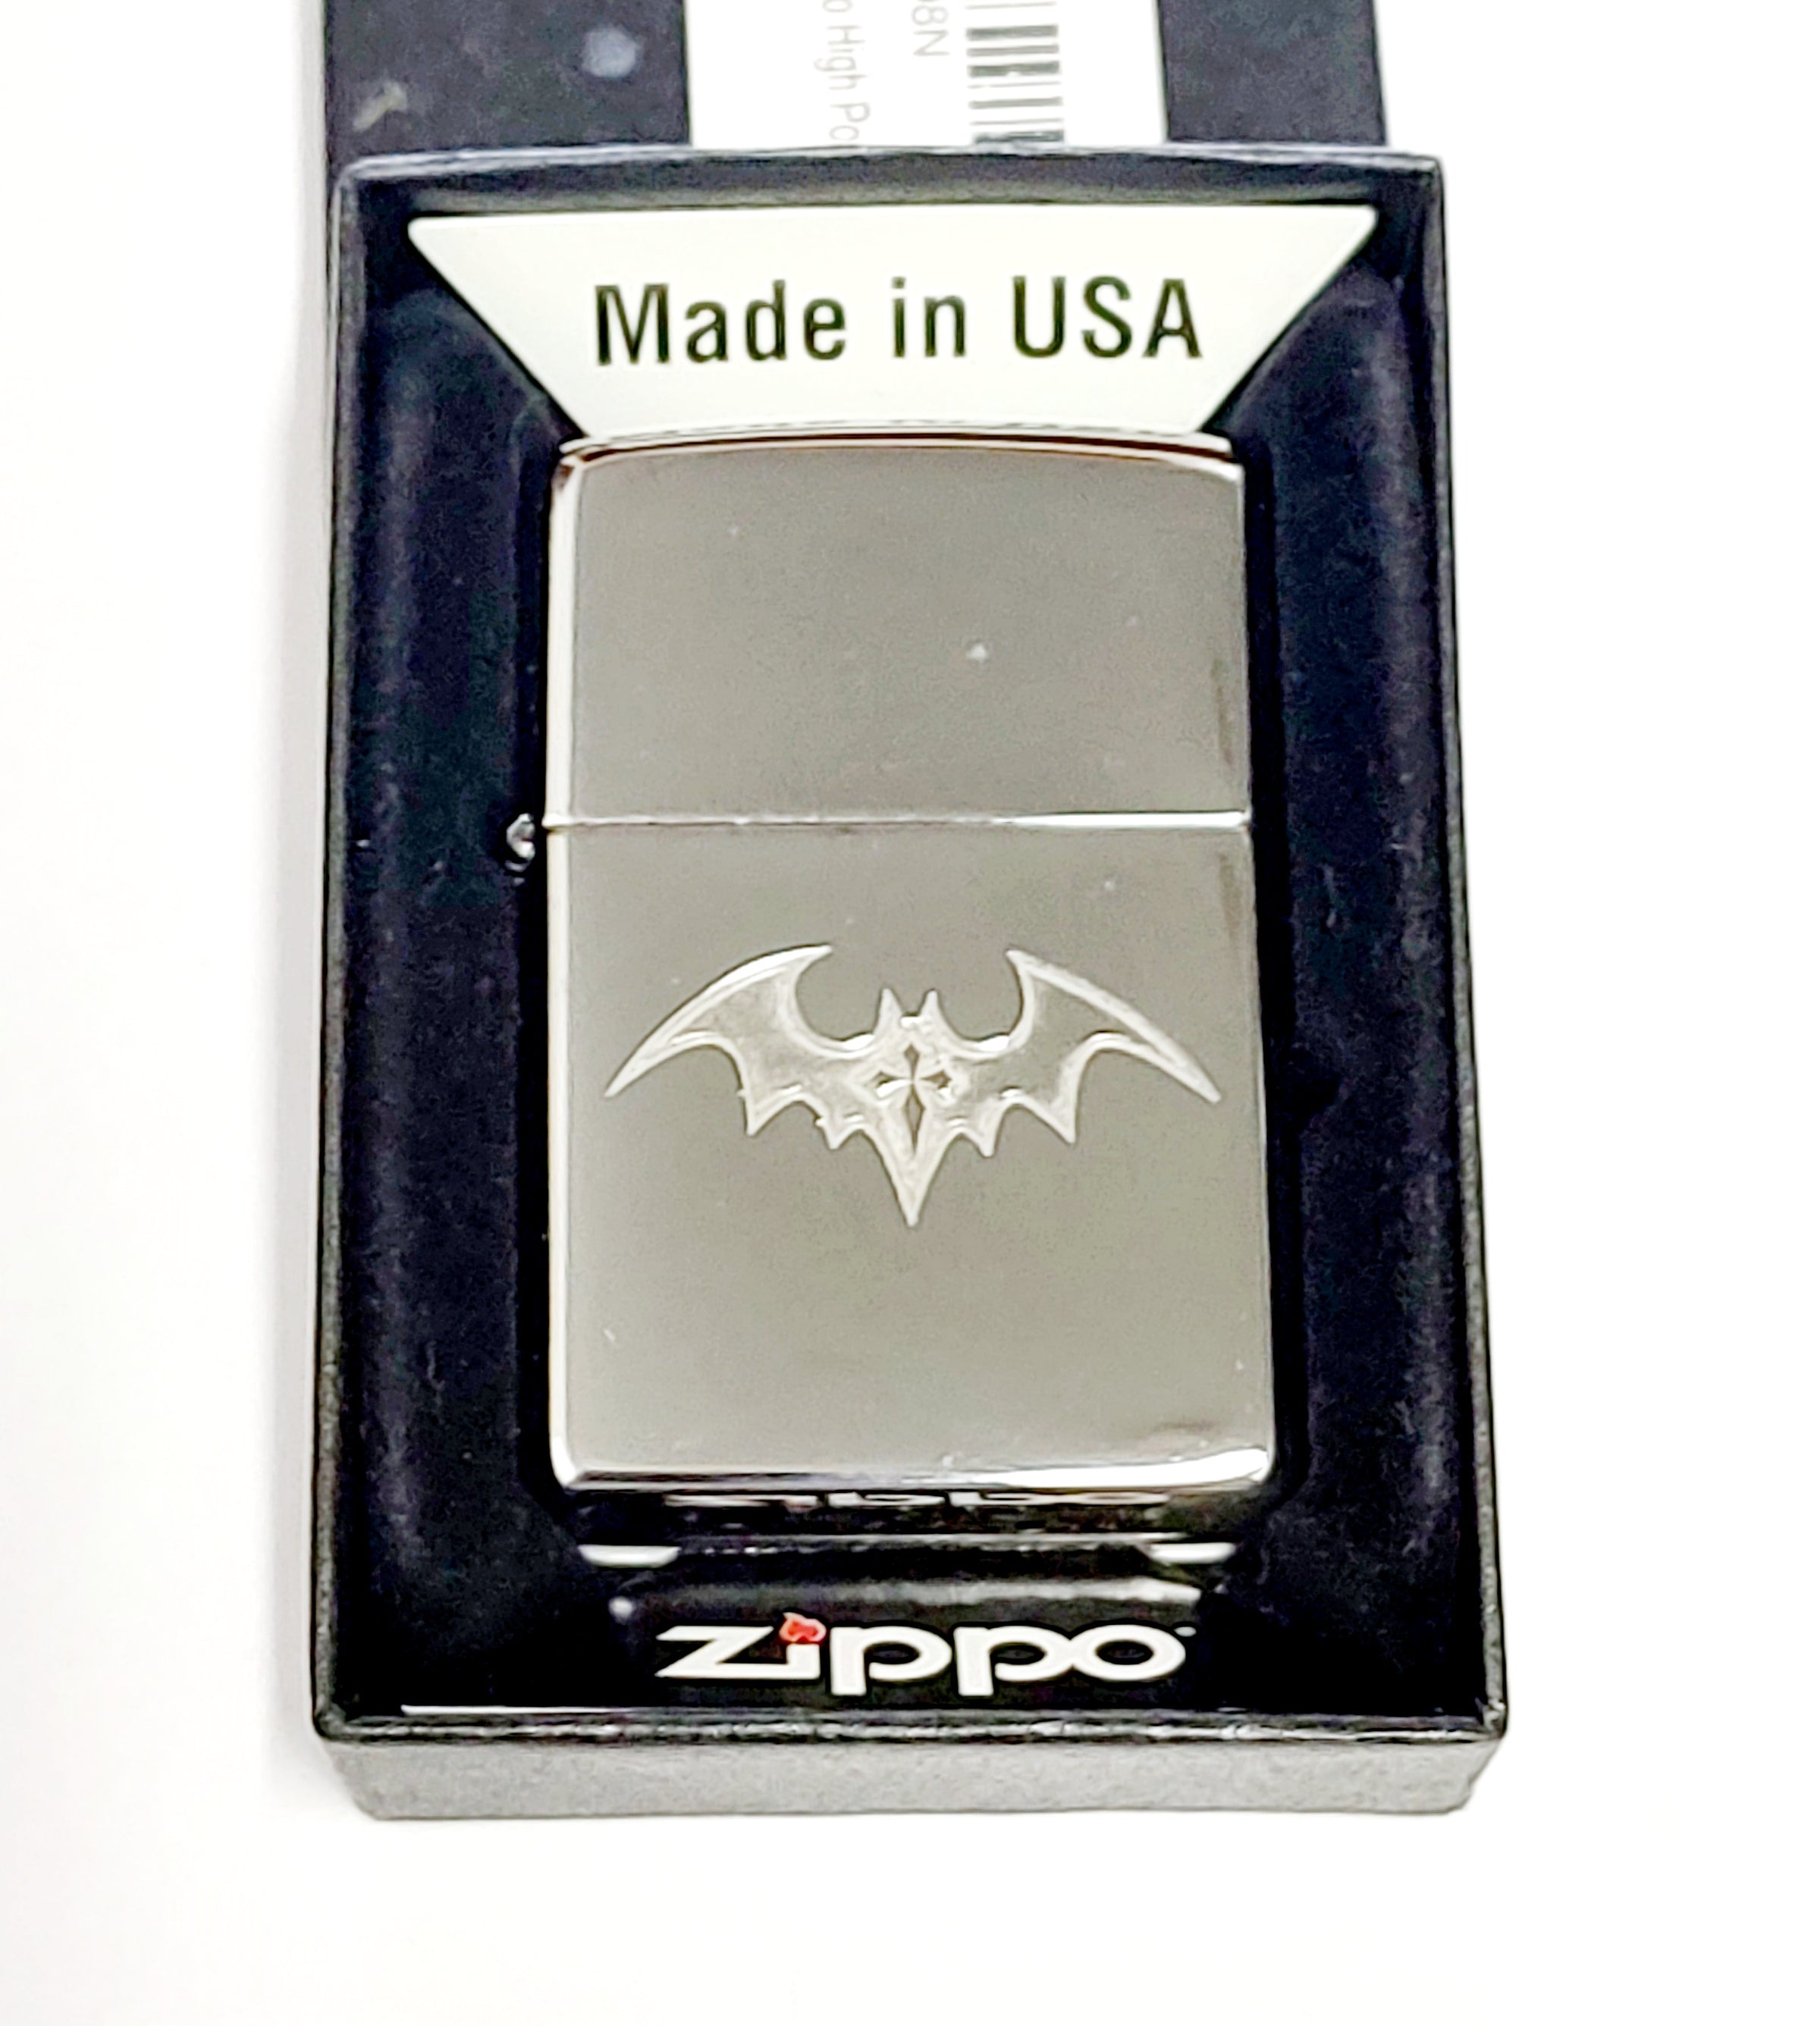 2016 Dark BAT with Gothic Cross Tattoo Custom Zippo Lighter Rare